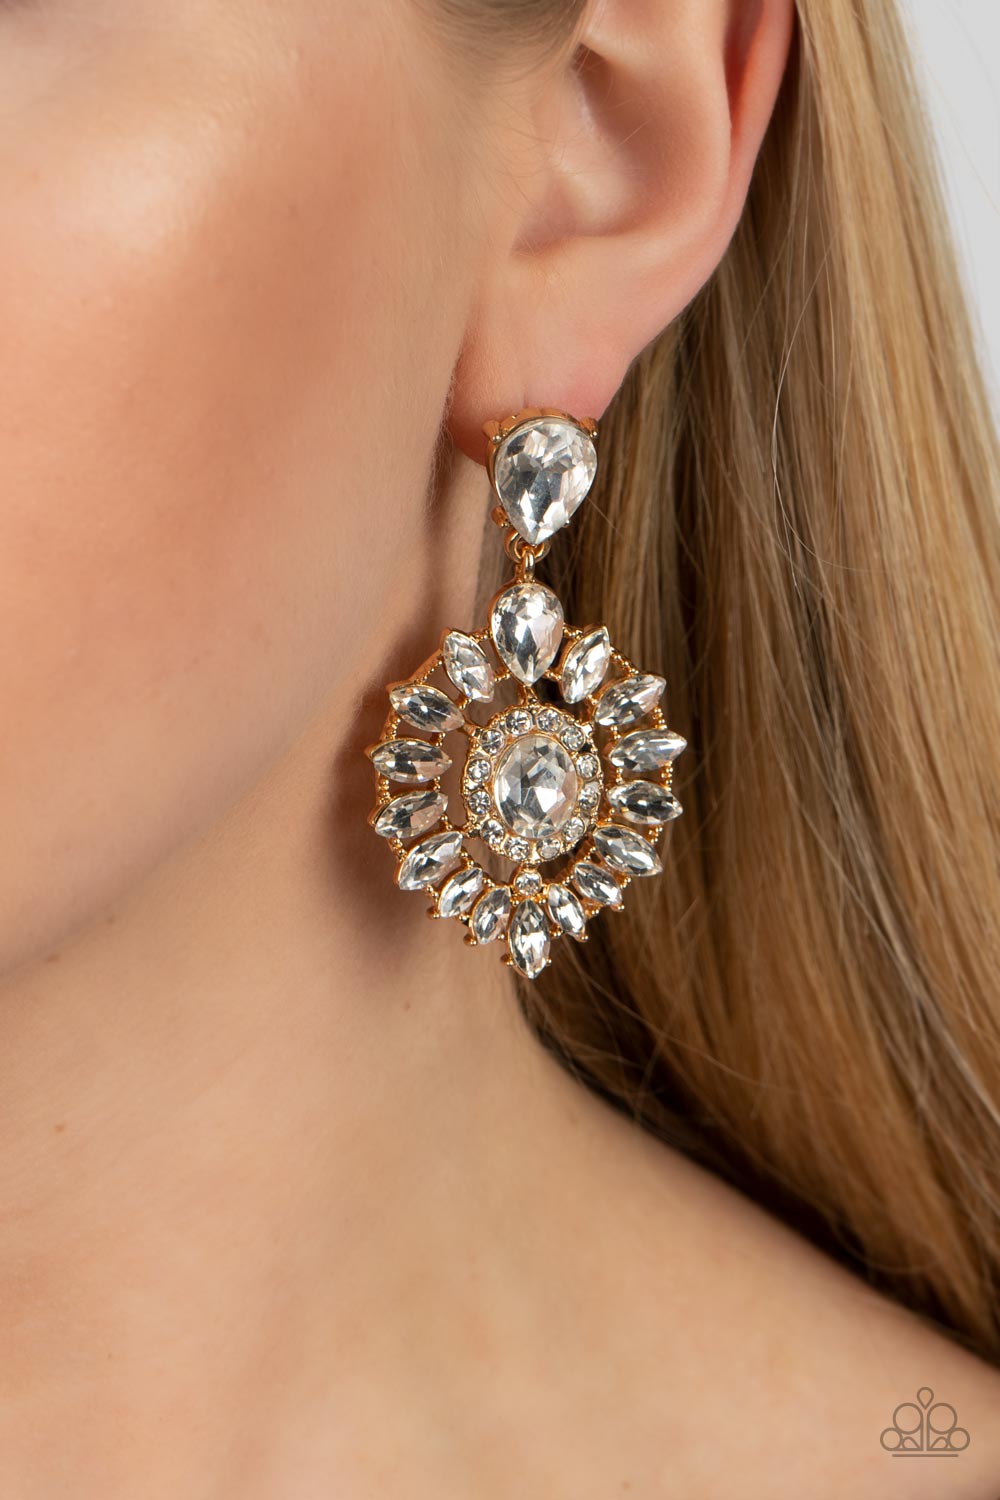 My Good LUXE Charm  Gold Earrings  - Jewelry by Bretta